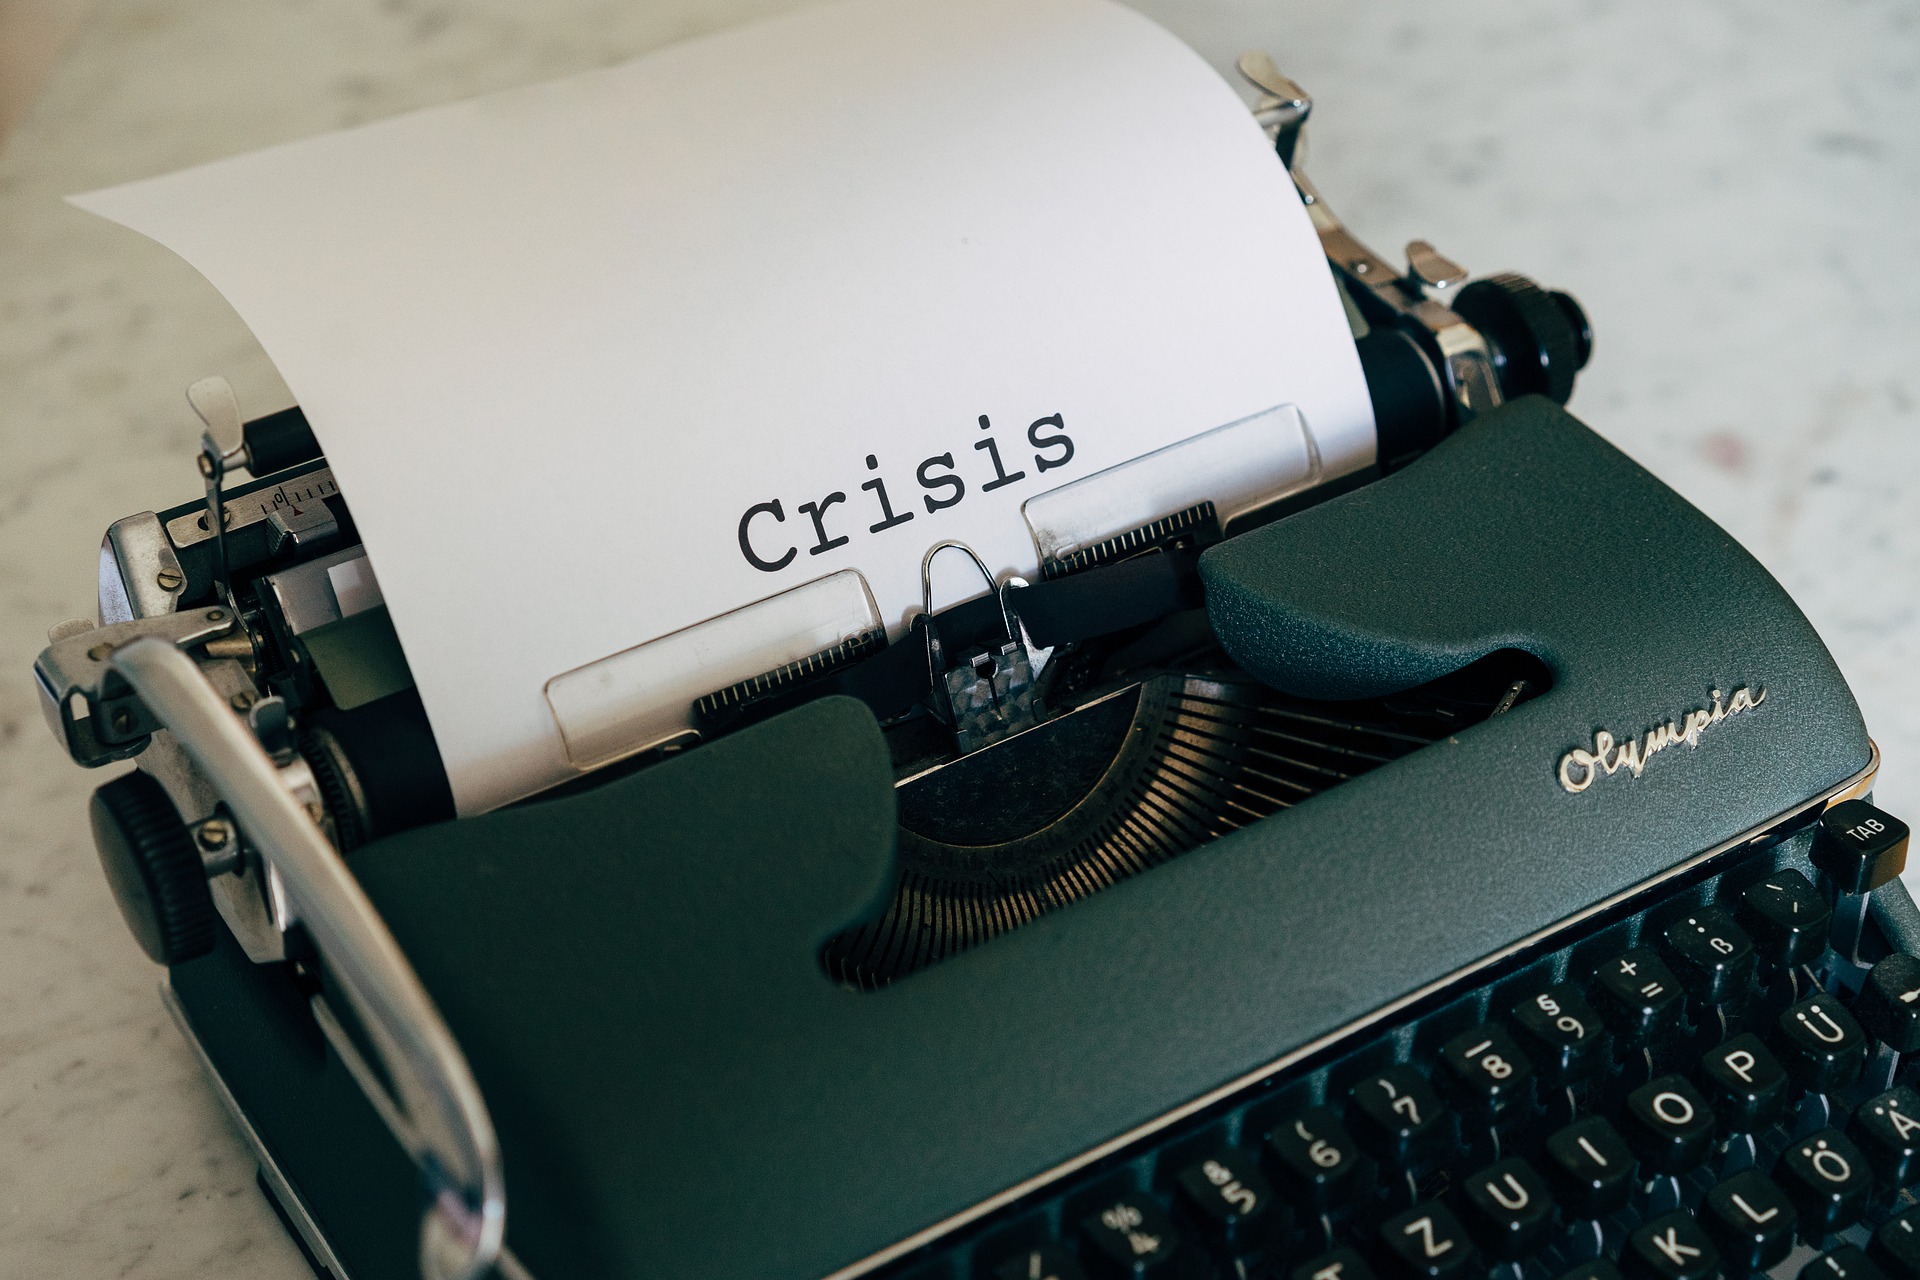 Crisis wrote on typewriter